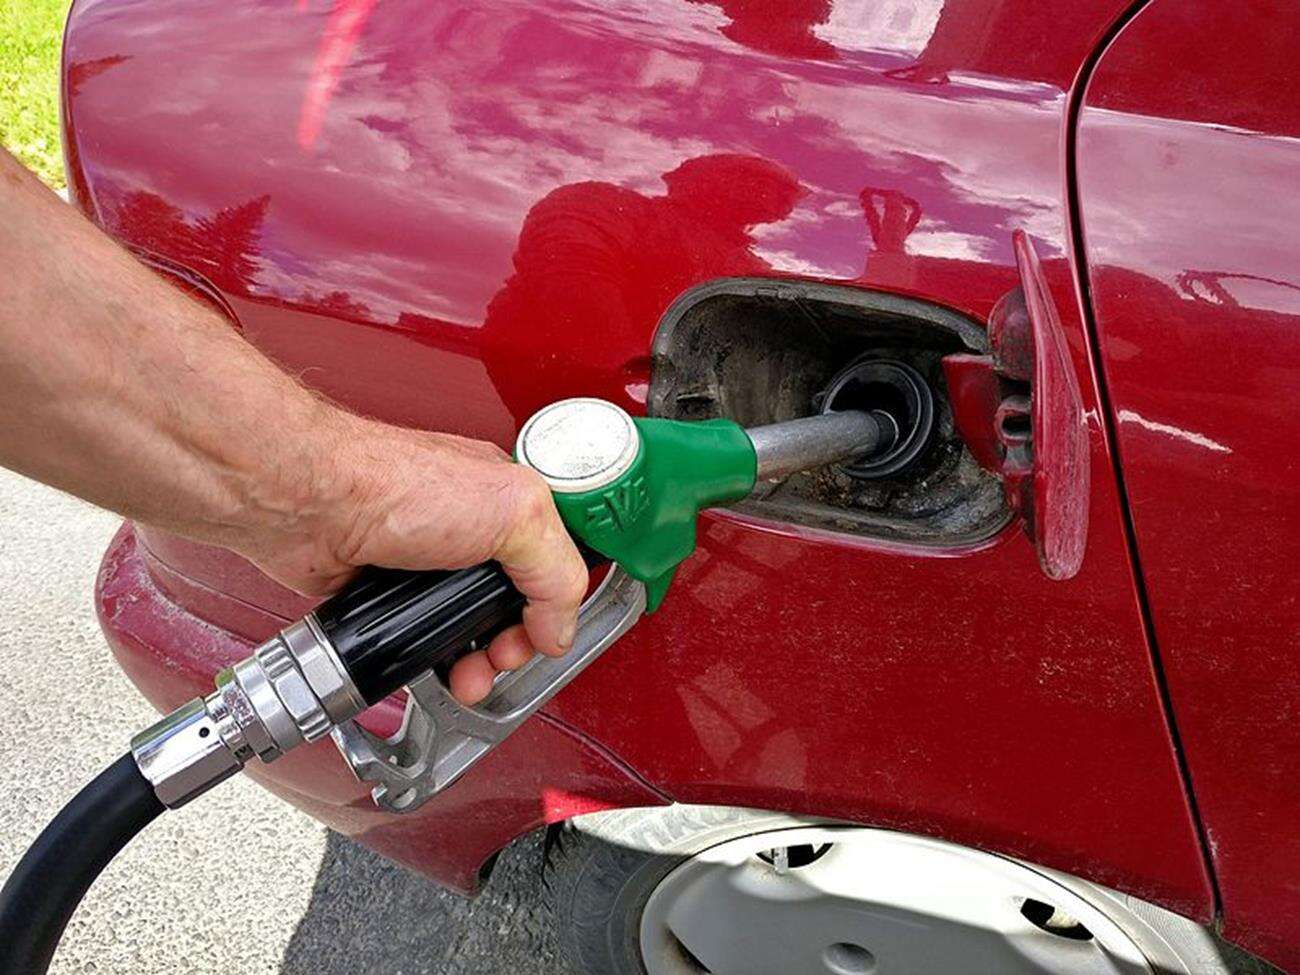 tania benzyna, ceny benzyny, ceny diesla, ceny LPG, ceny paliw, Polska paliwa